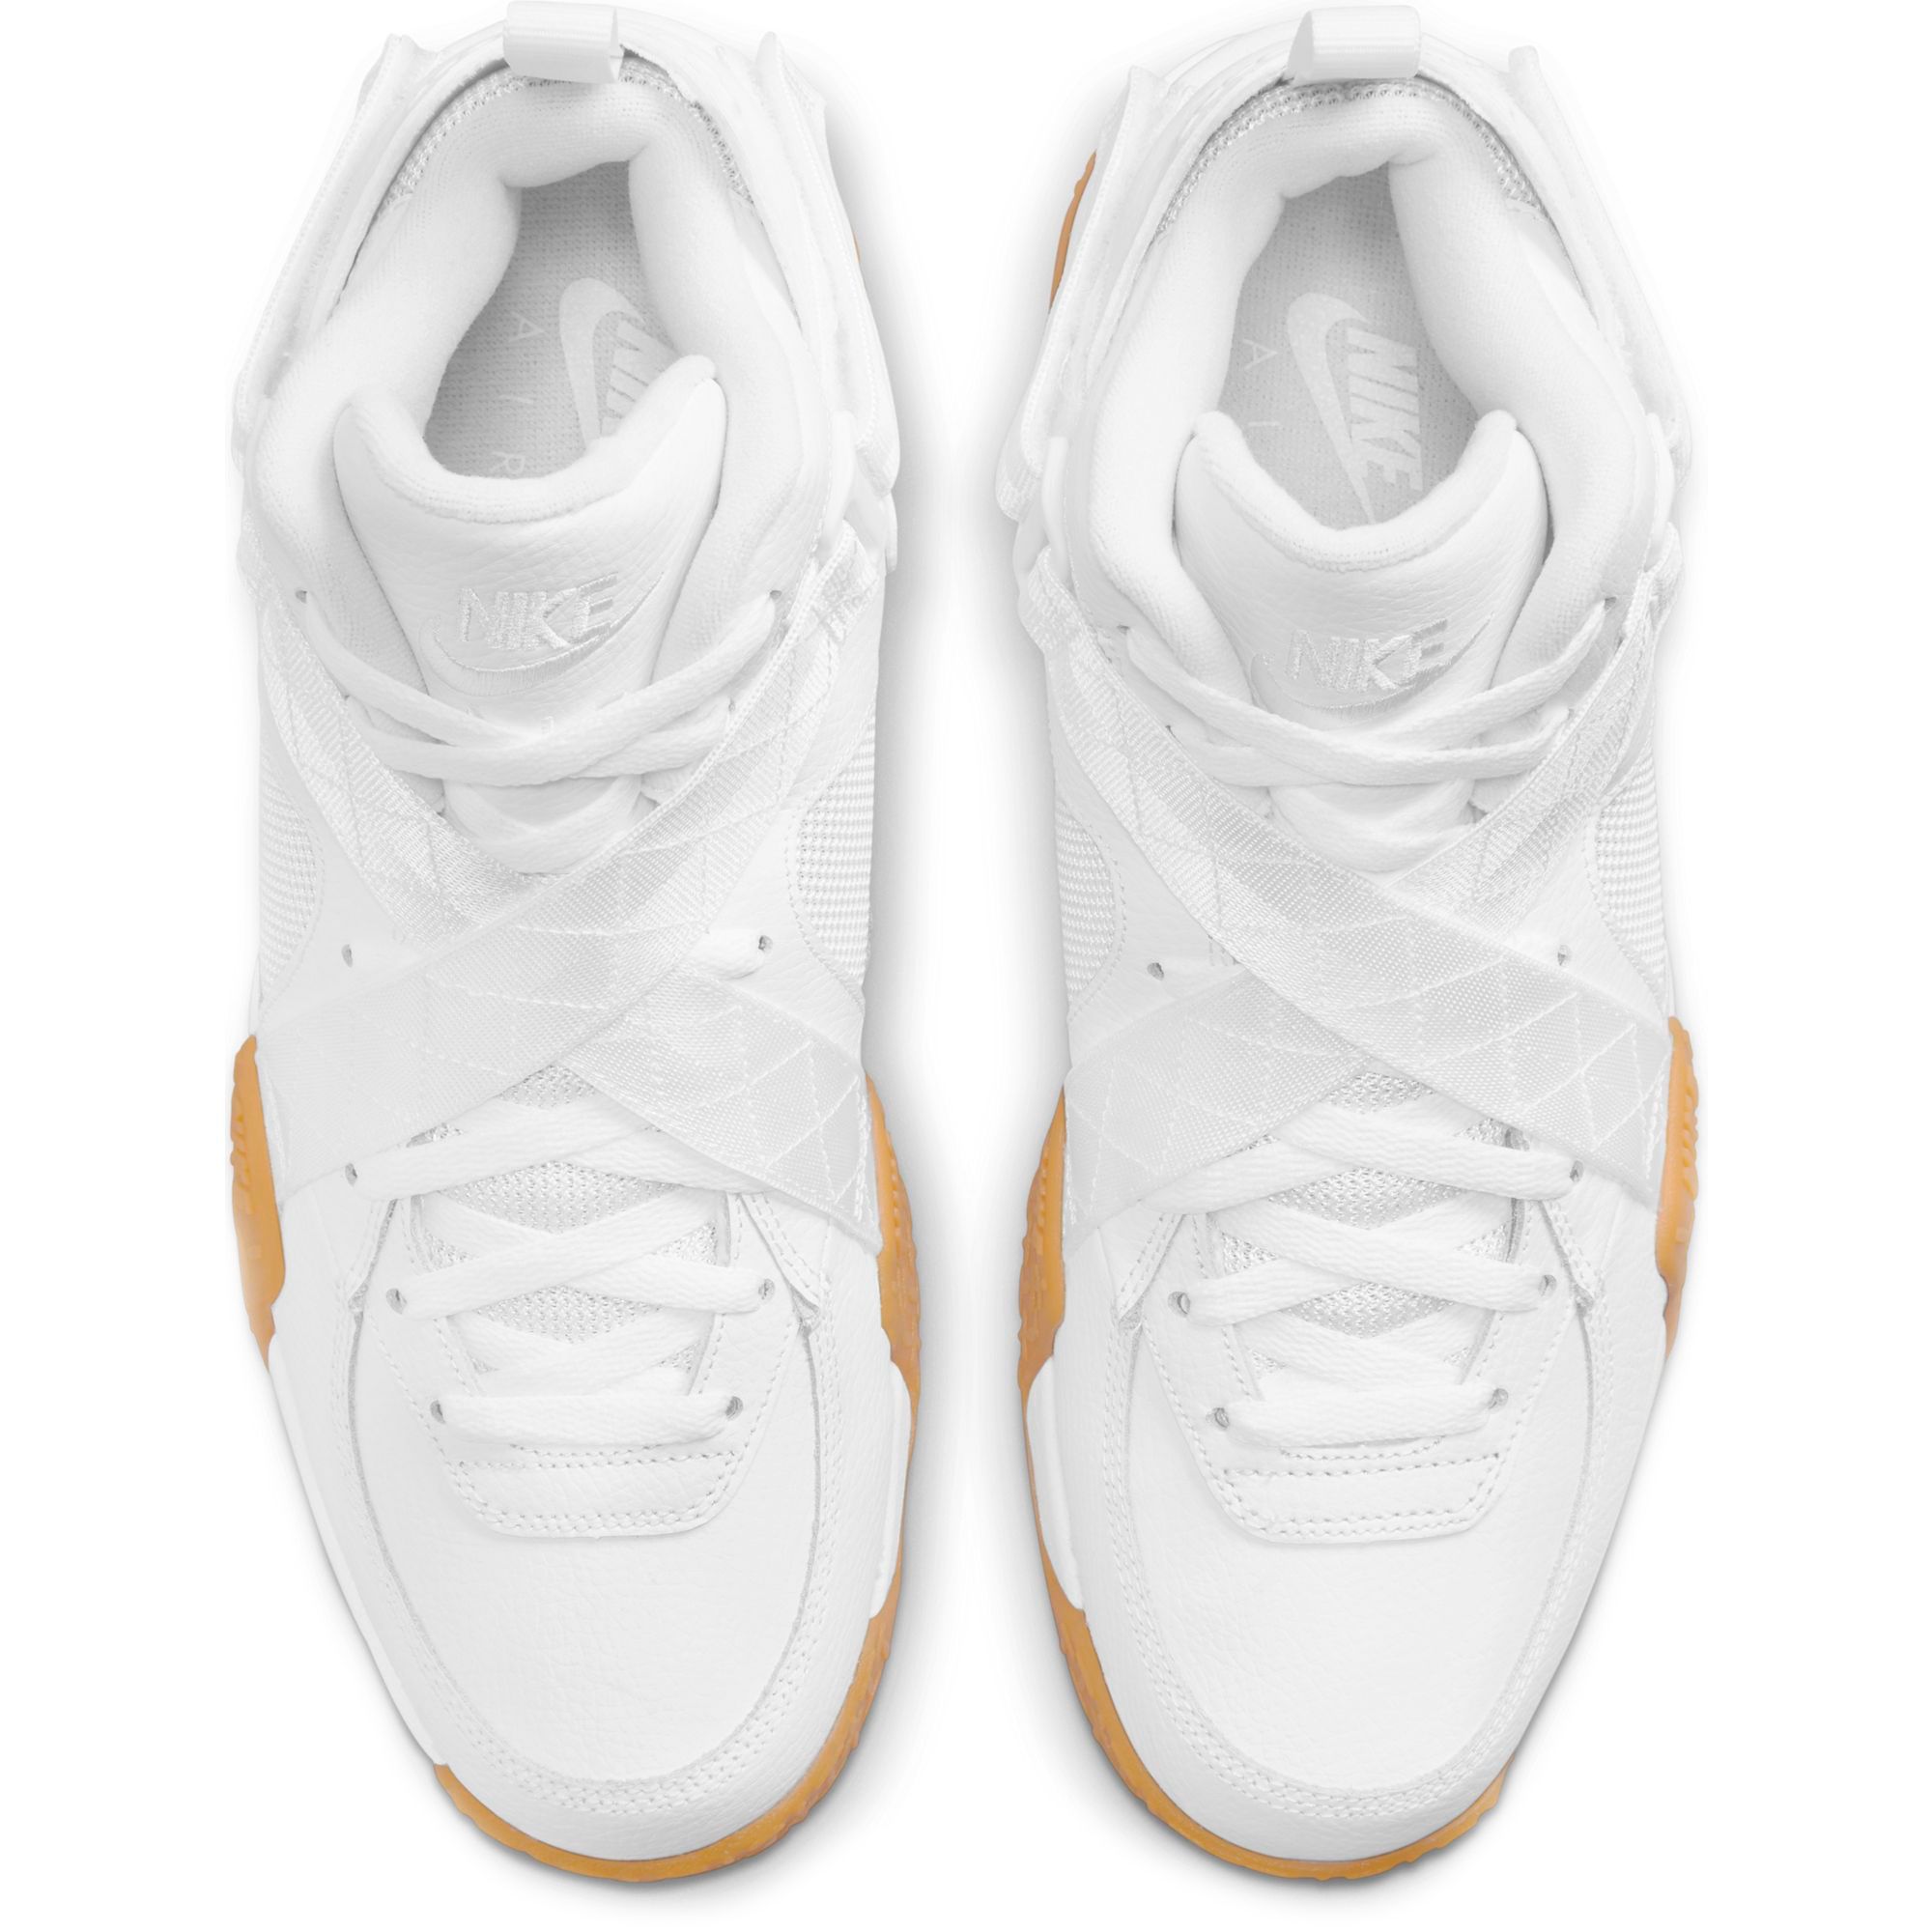 Nike Air Raid OG White Gum Size 14-15 [DJ5974-100]